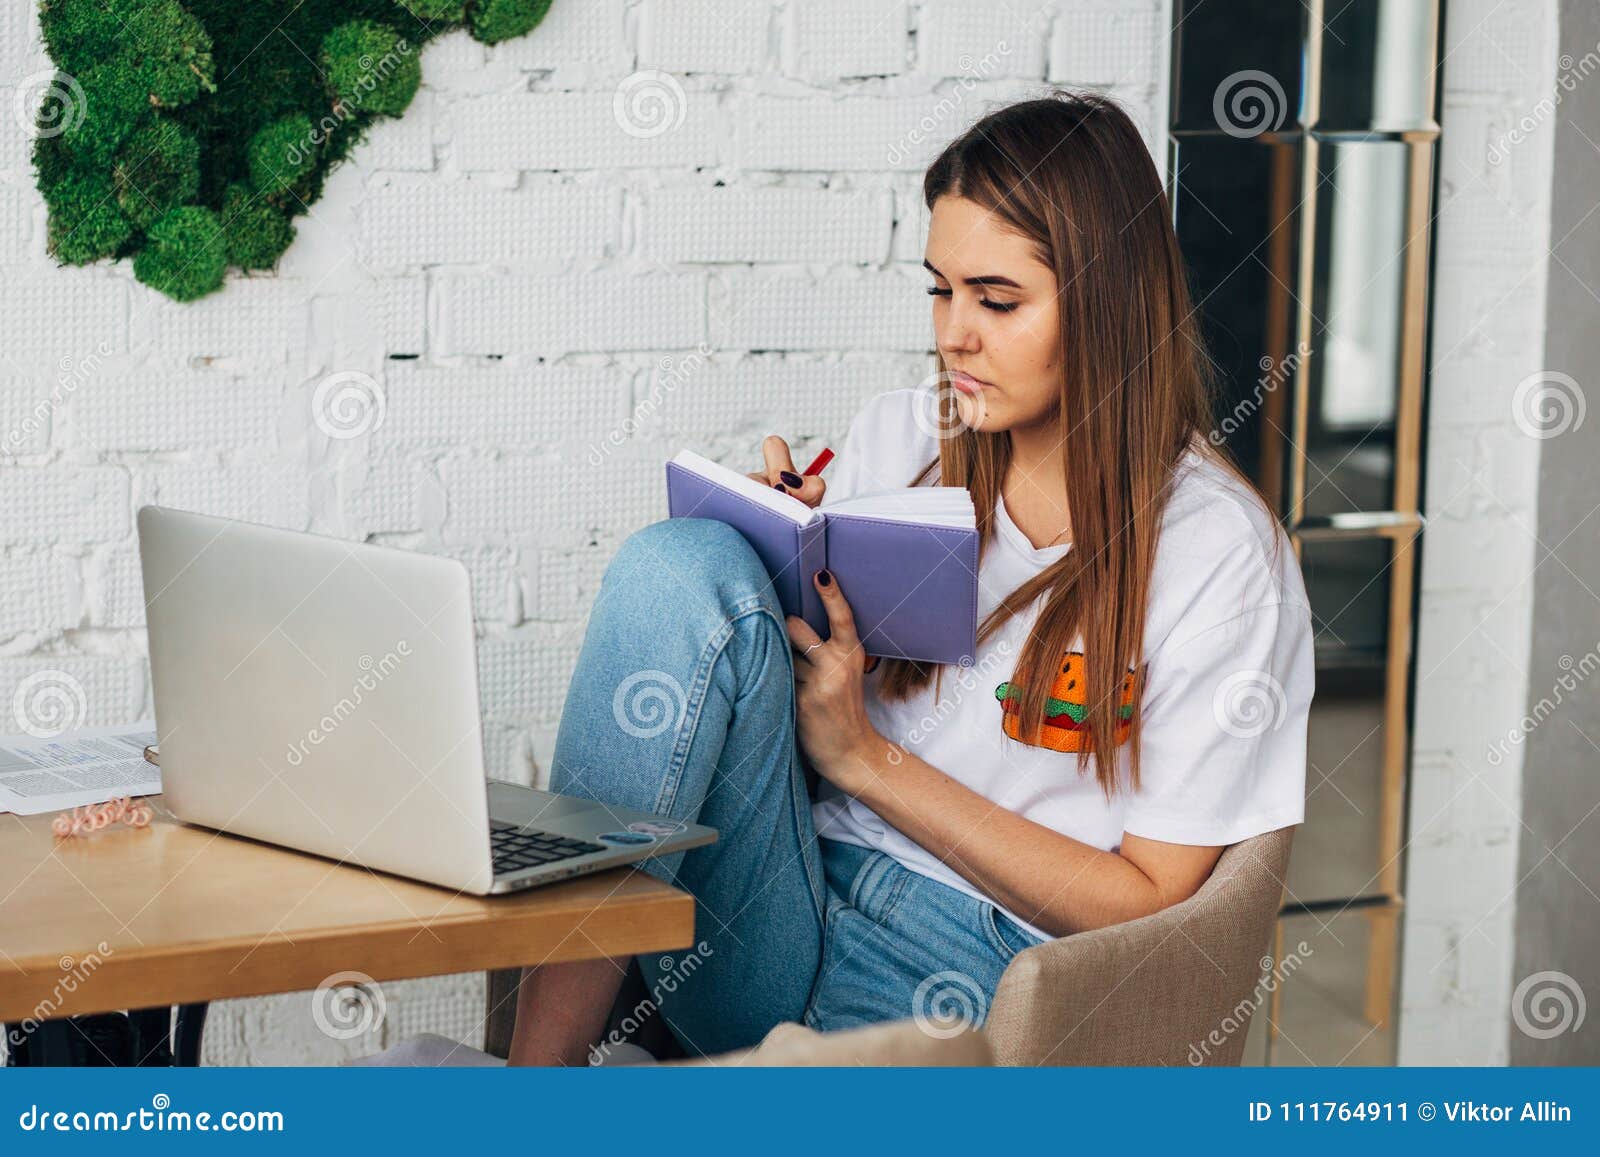 Где можно поработать с ноутбуком в москве. Фрилансерша. Женщина работает с книгами. Ноутбук работа Эстетика. За столом мужчина и девушка работают в ноутбуках.